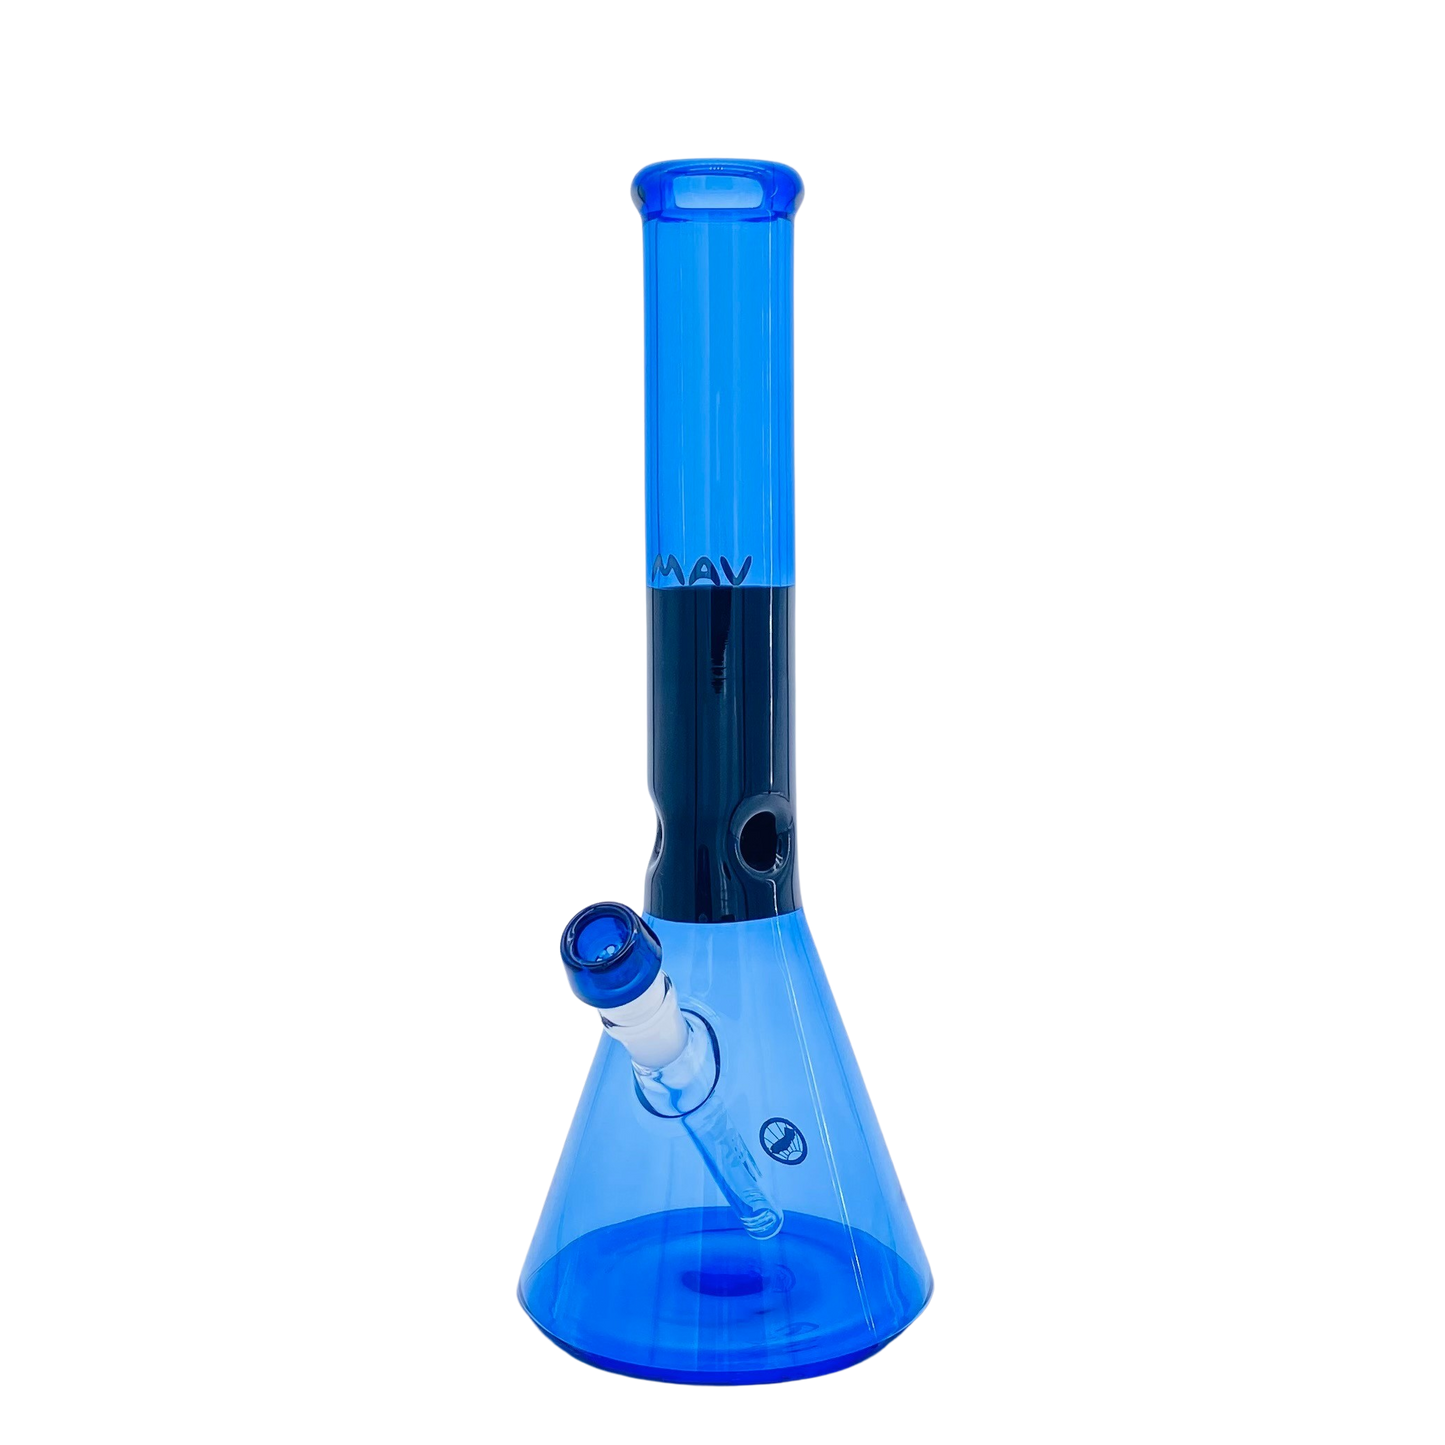 15" x 5mm Beaker Bong Black & Blue